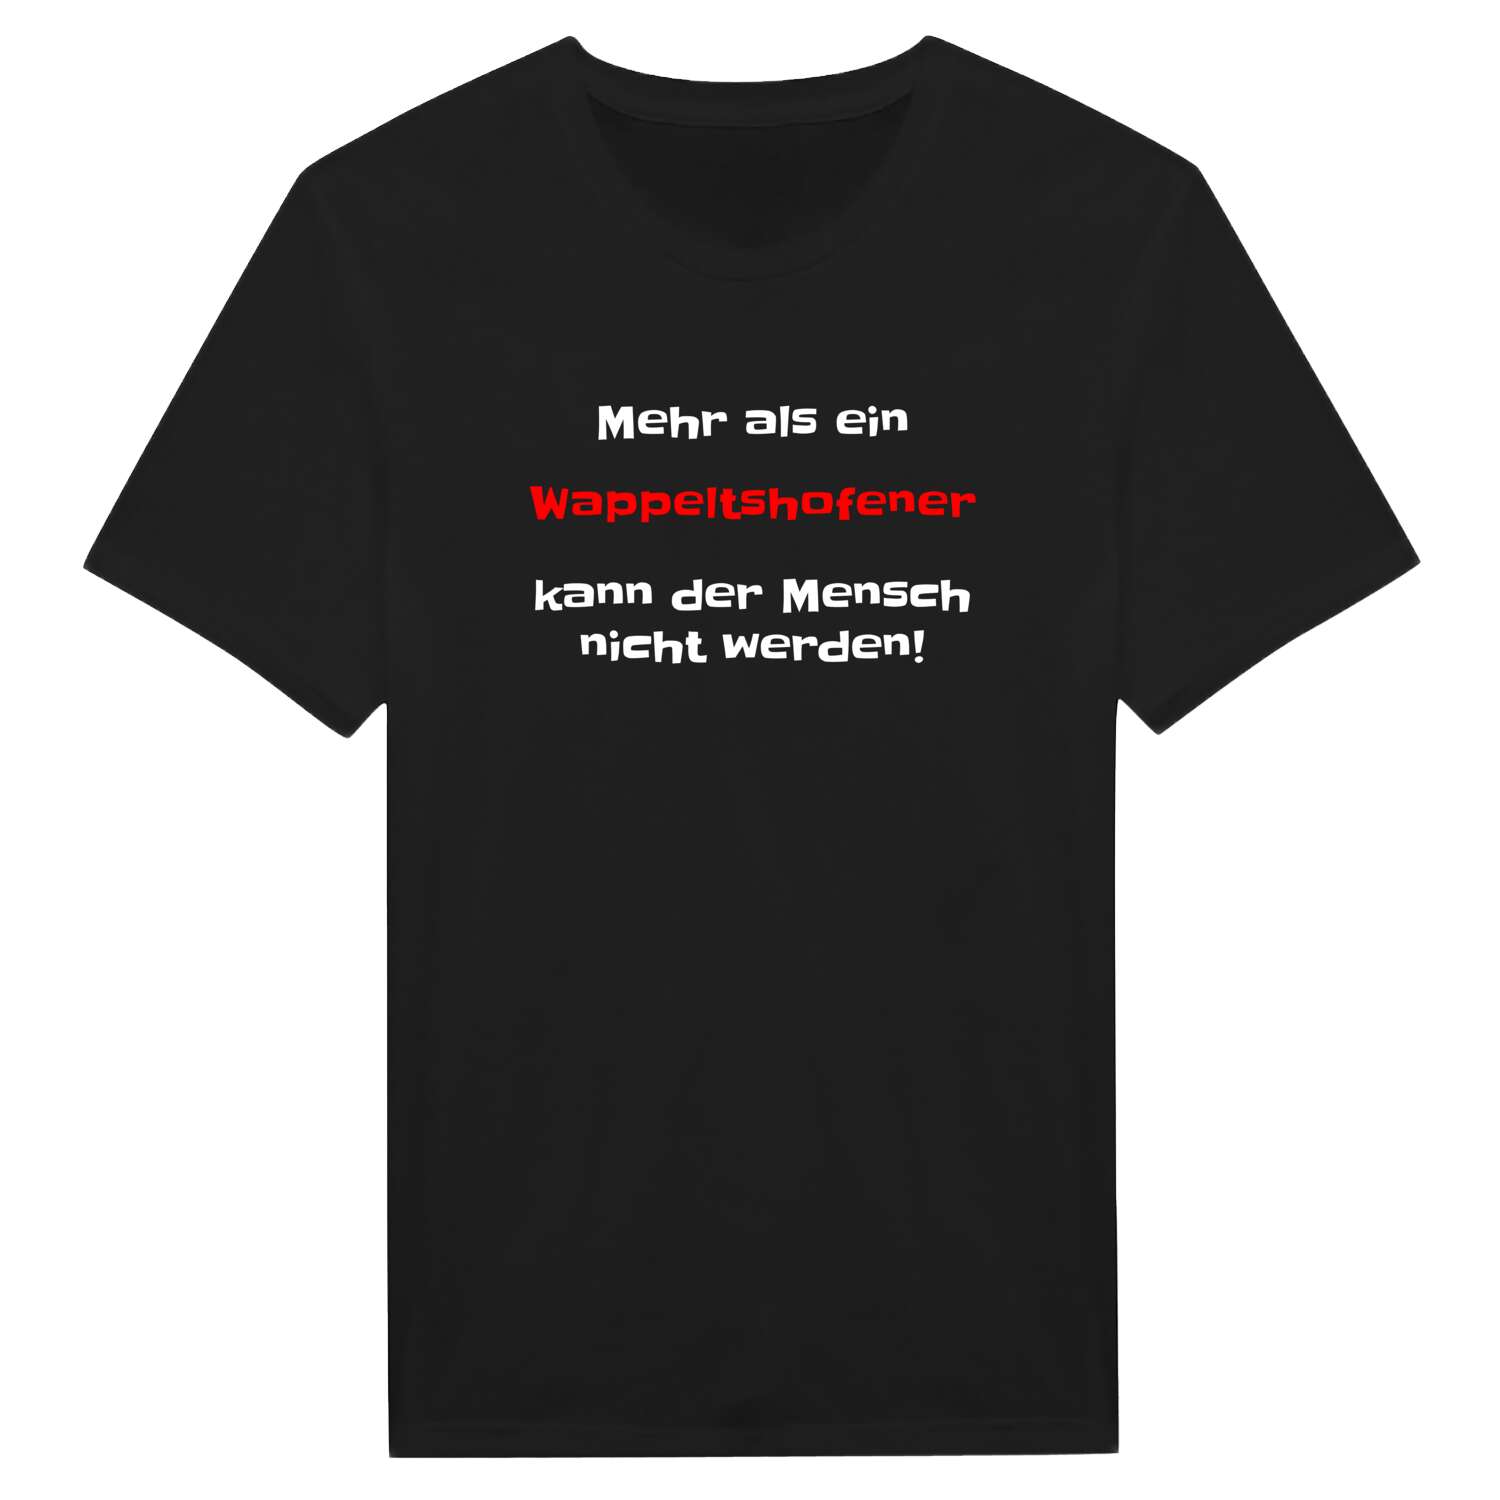 Wappeltshofen T-Shirt »Mehr als ein«